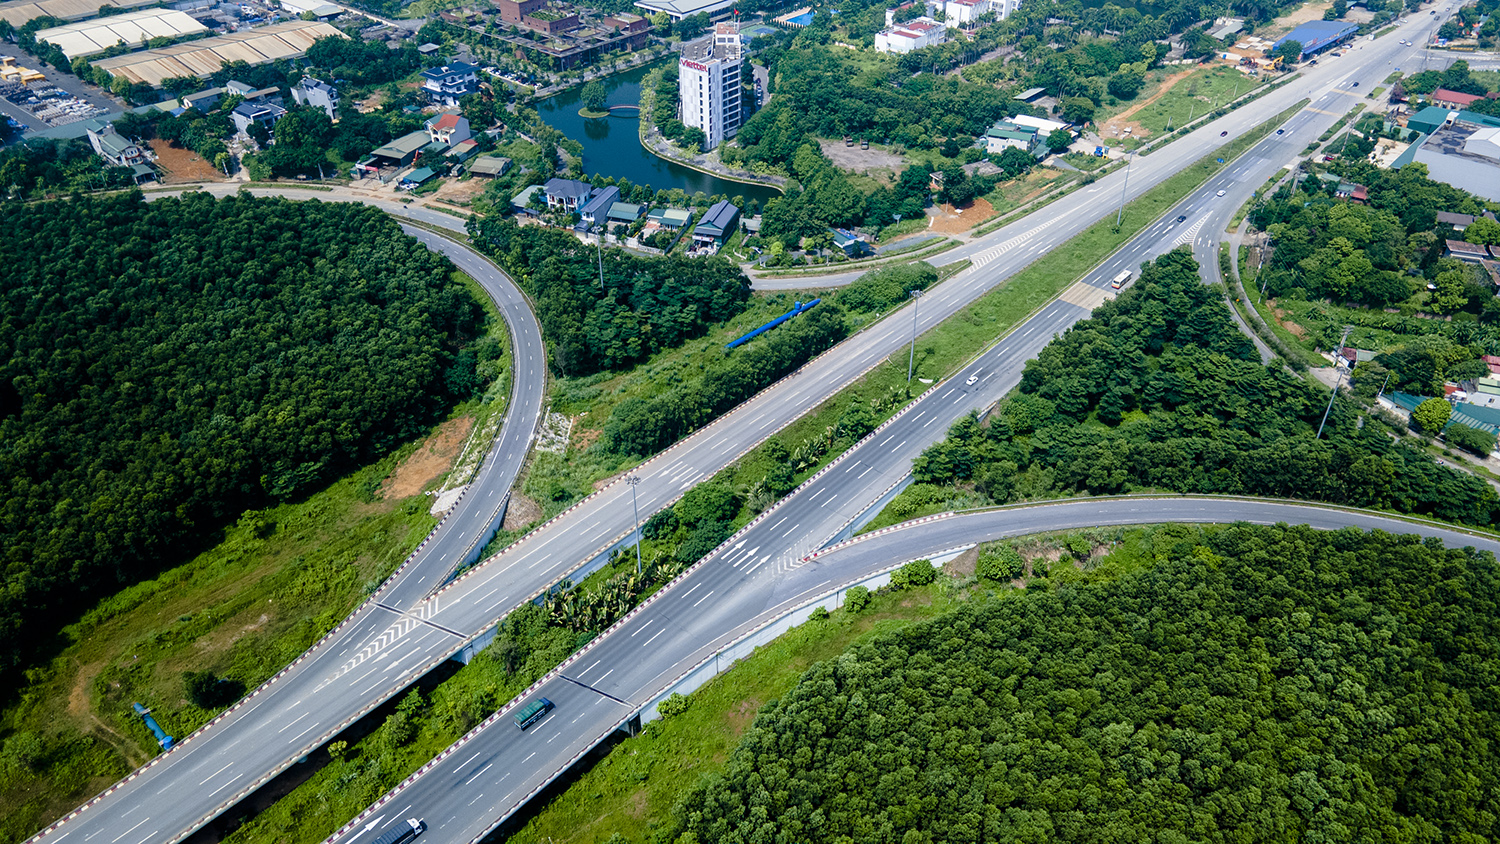 Đại lộ hiện đại nhất Việt Nam đẹp ngỡ ngàng nhìn từ trên cao - 5